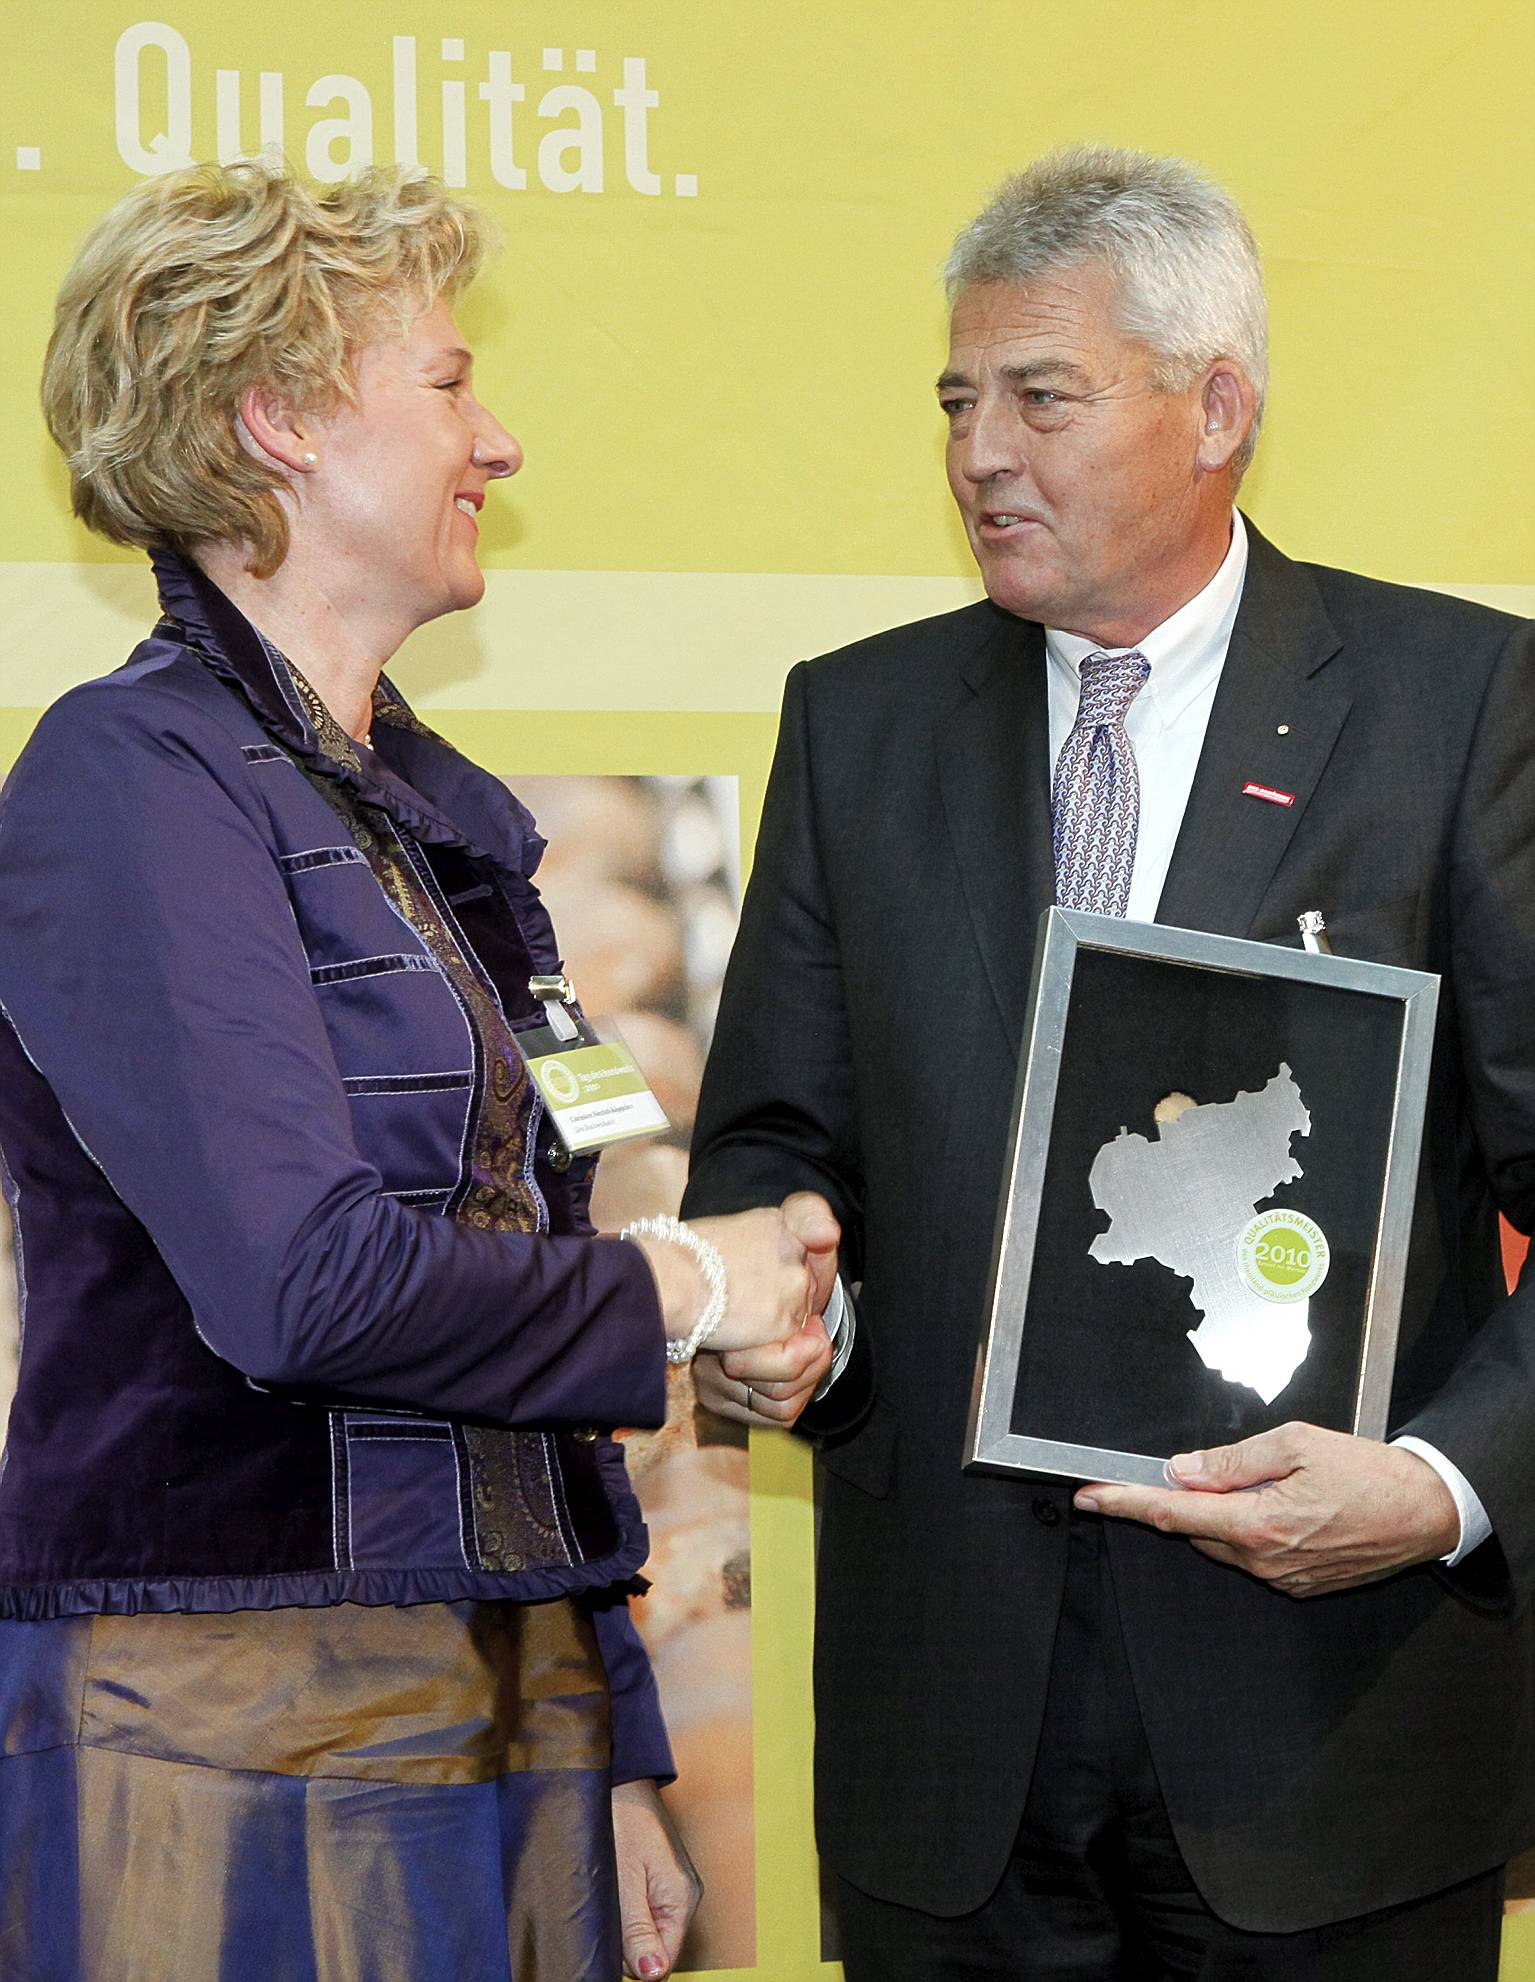 2010 wurde die Buchwerkstatt von Karl Josef Wirges, Präsident der Handwerkskammer Rheinhessen mit der Auszeichnung "Qualitätsmeister im Handwerk" prämiert